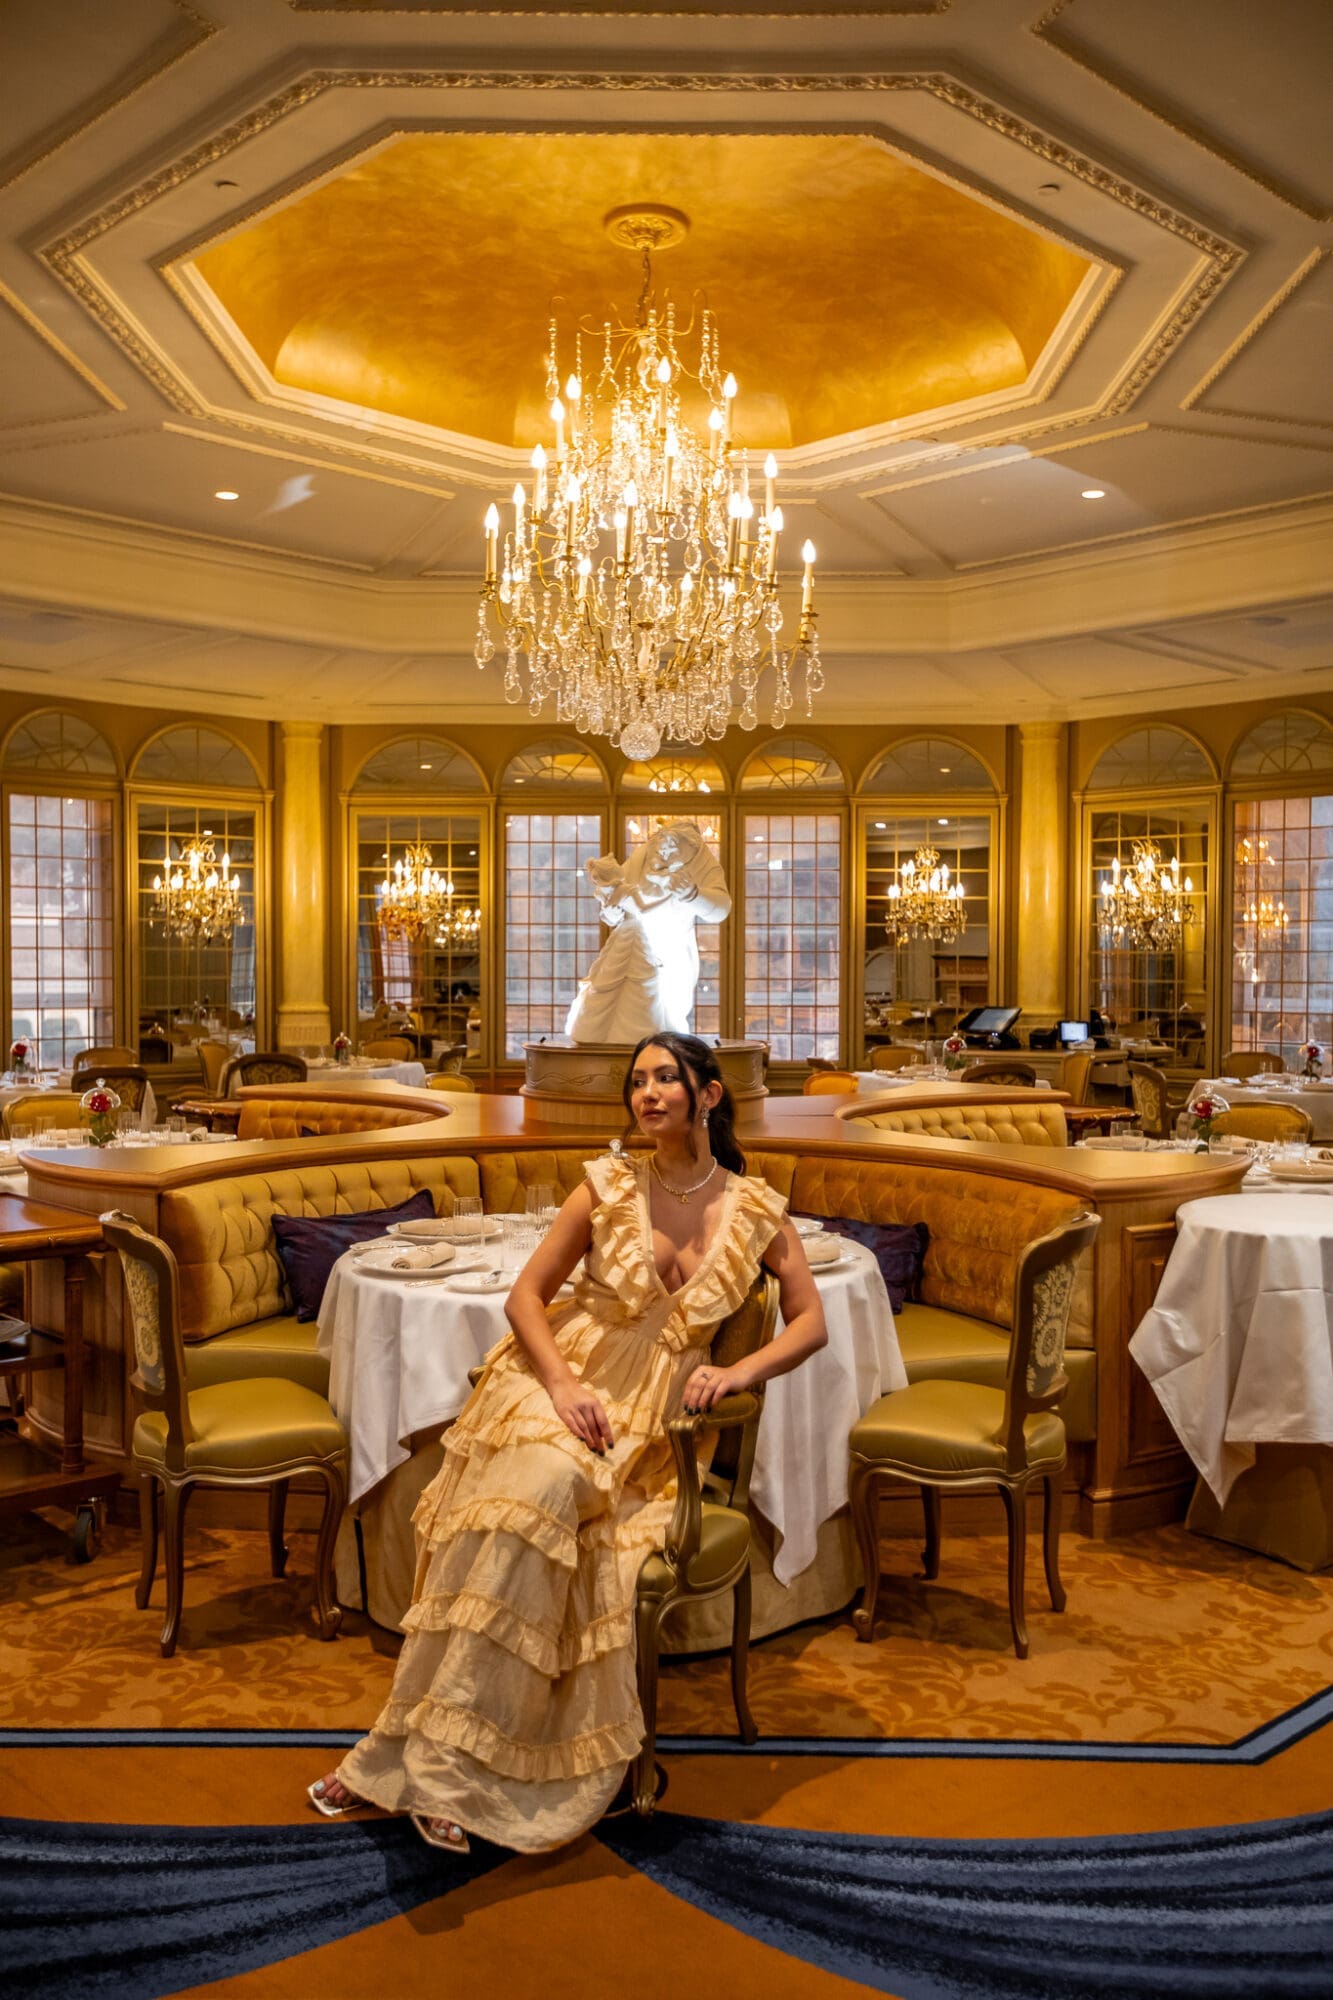 La Table de Lumiere Disneyland Hotel Paris Restaurant Review